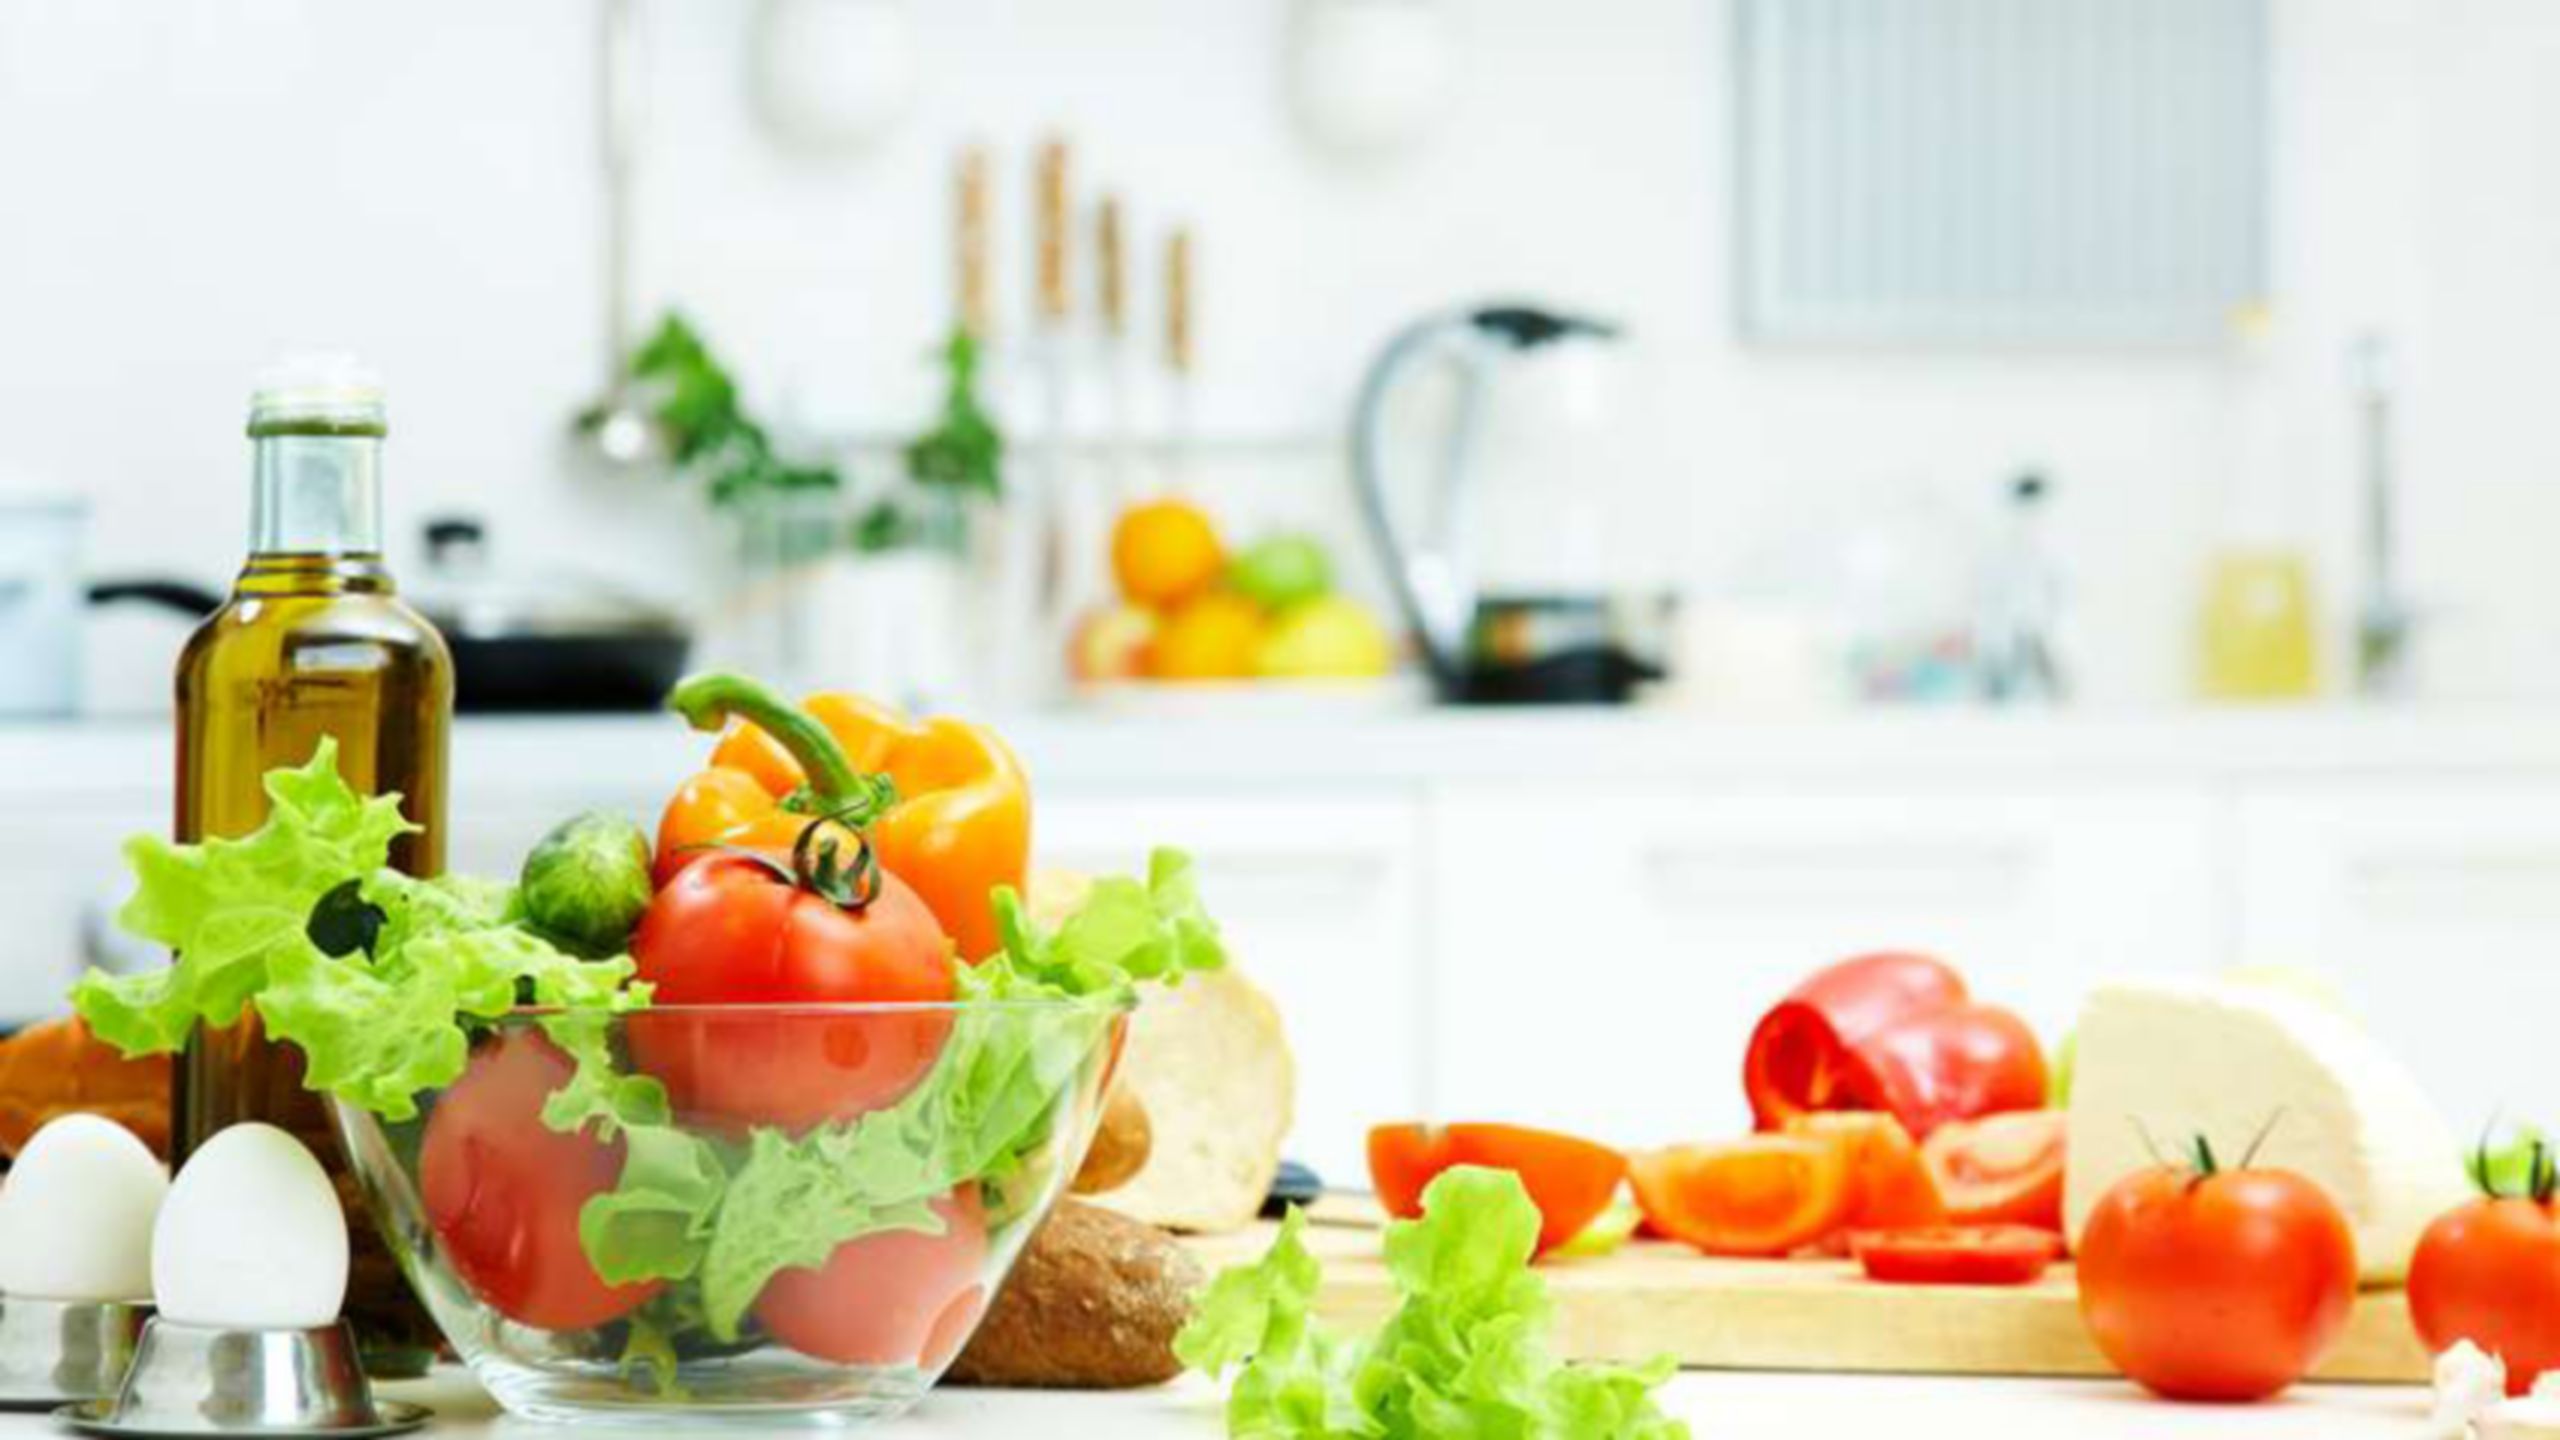 Tomates, lechuga y huevos para hacer una ensalada sobre la encimera de una cocina